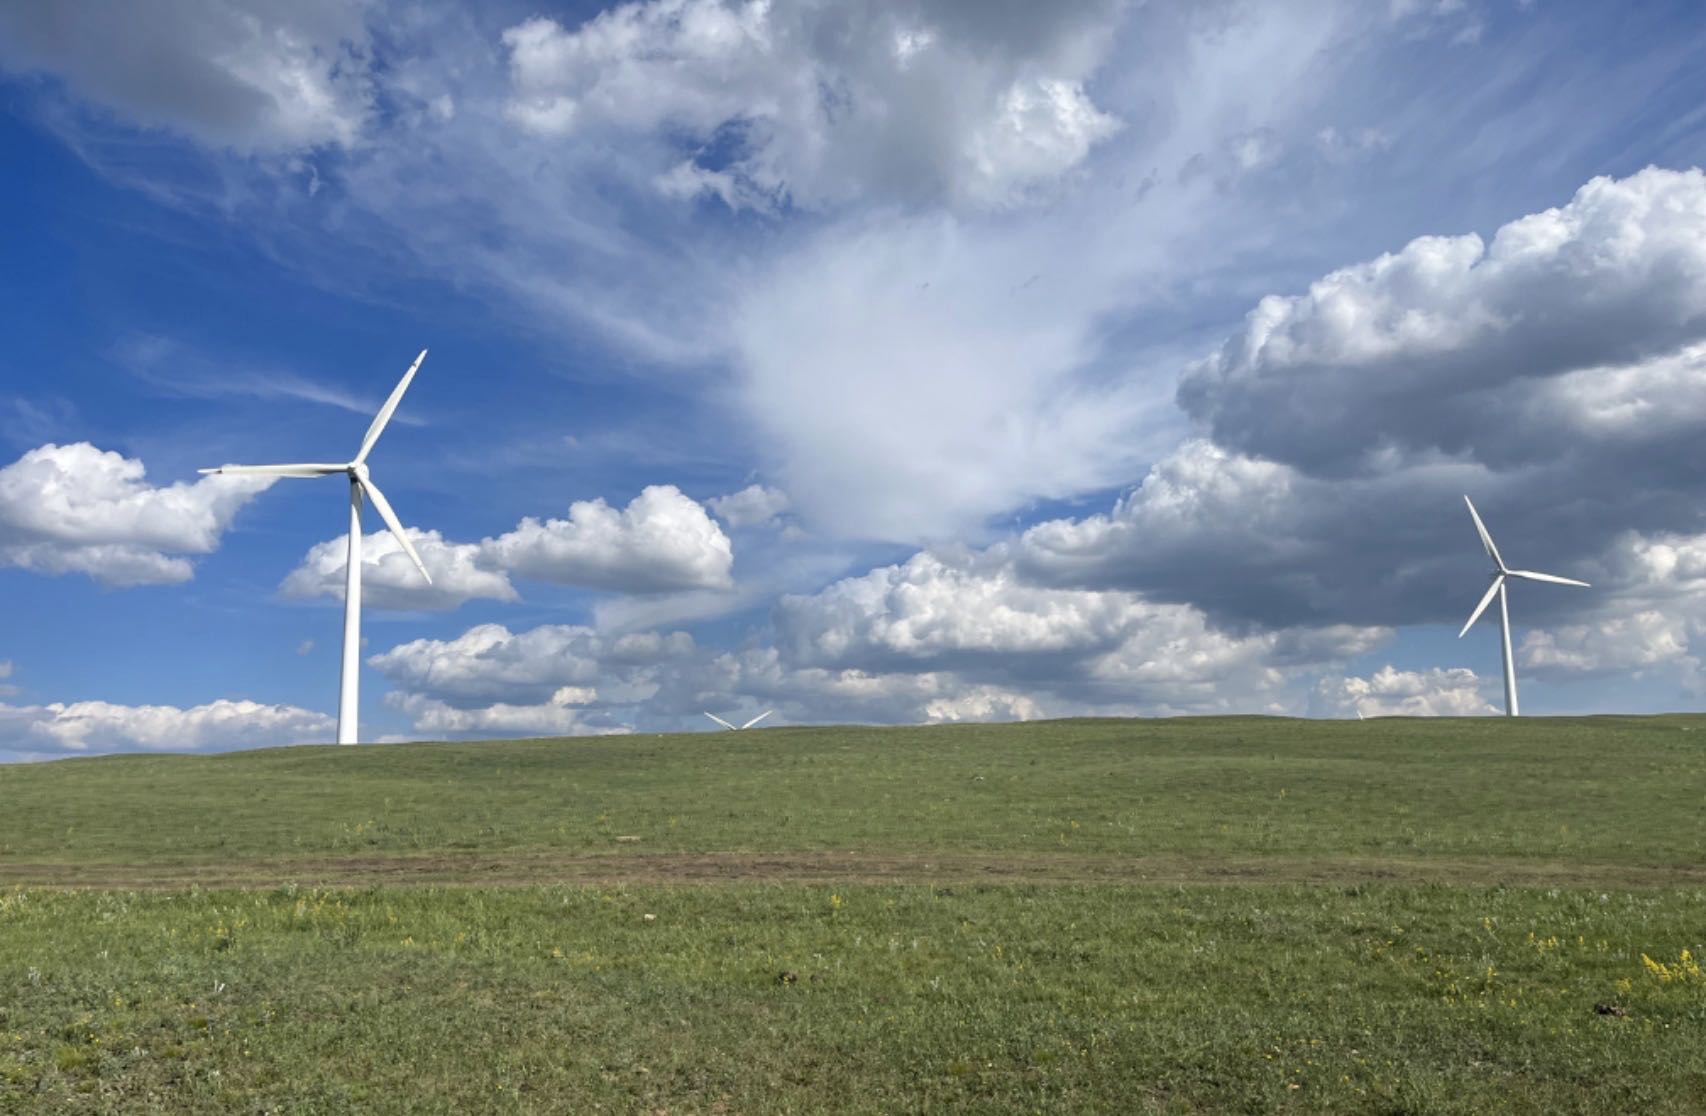 被誉为“风电之都”的乌兰察布大草原上，大型风力发电设备随处可见。记者 杨曦 摄